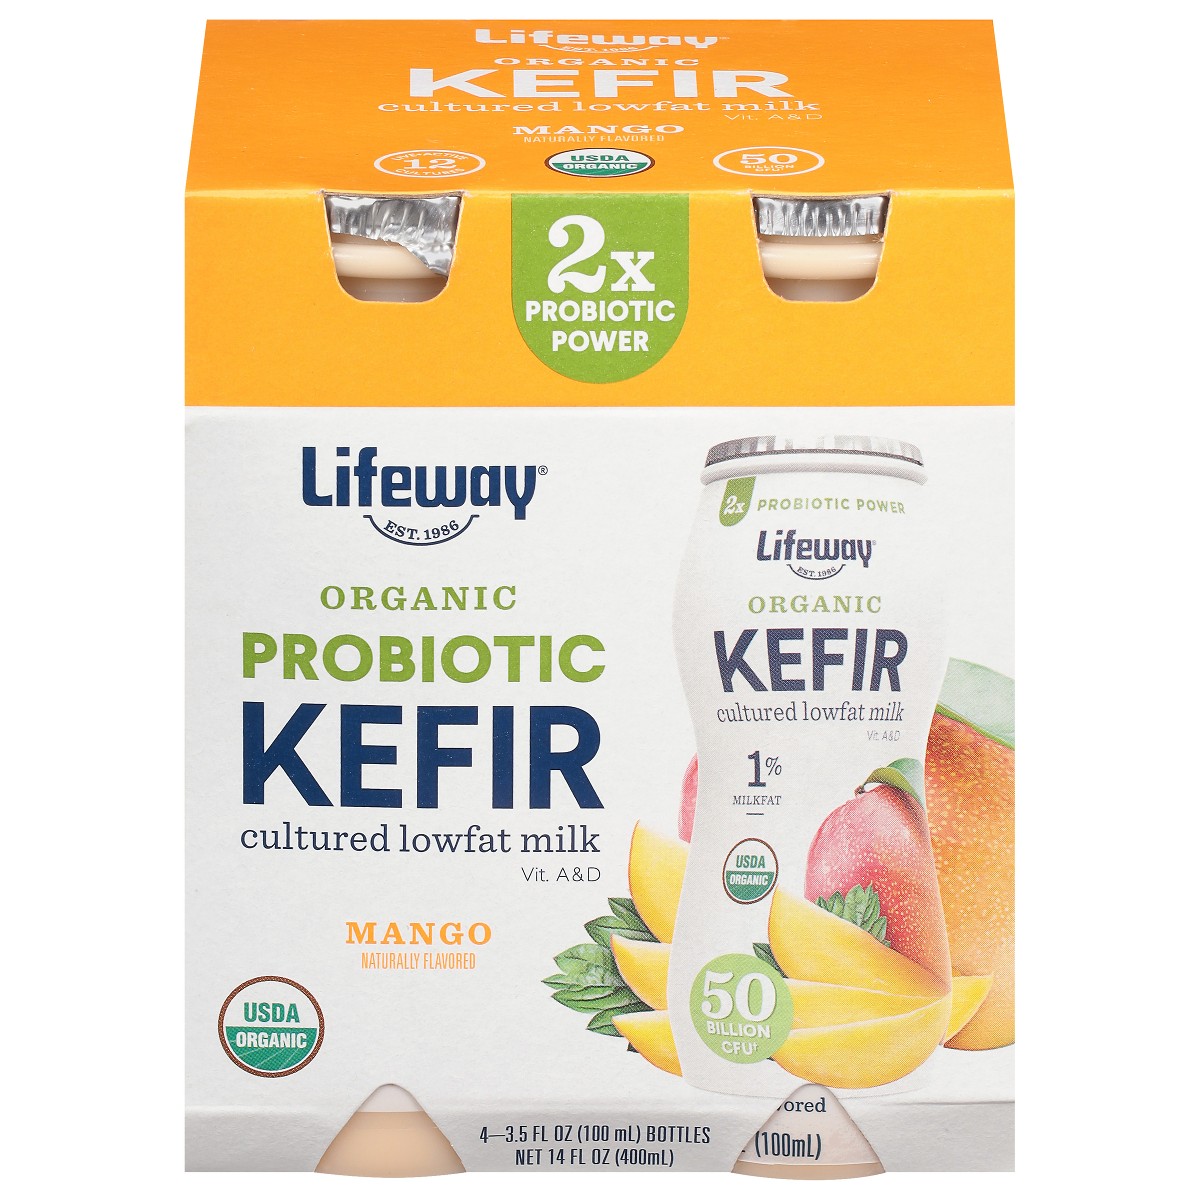 Lifeway probiotic kefir.jpg